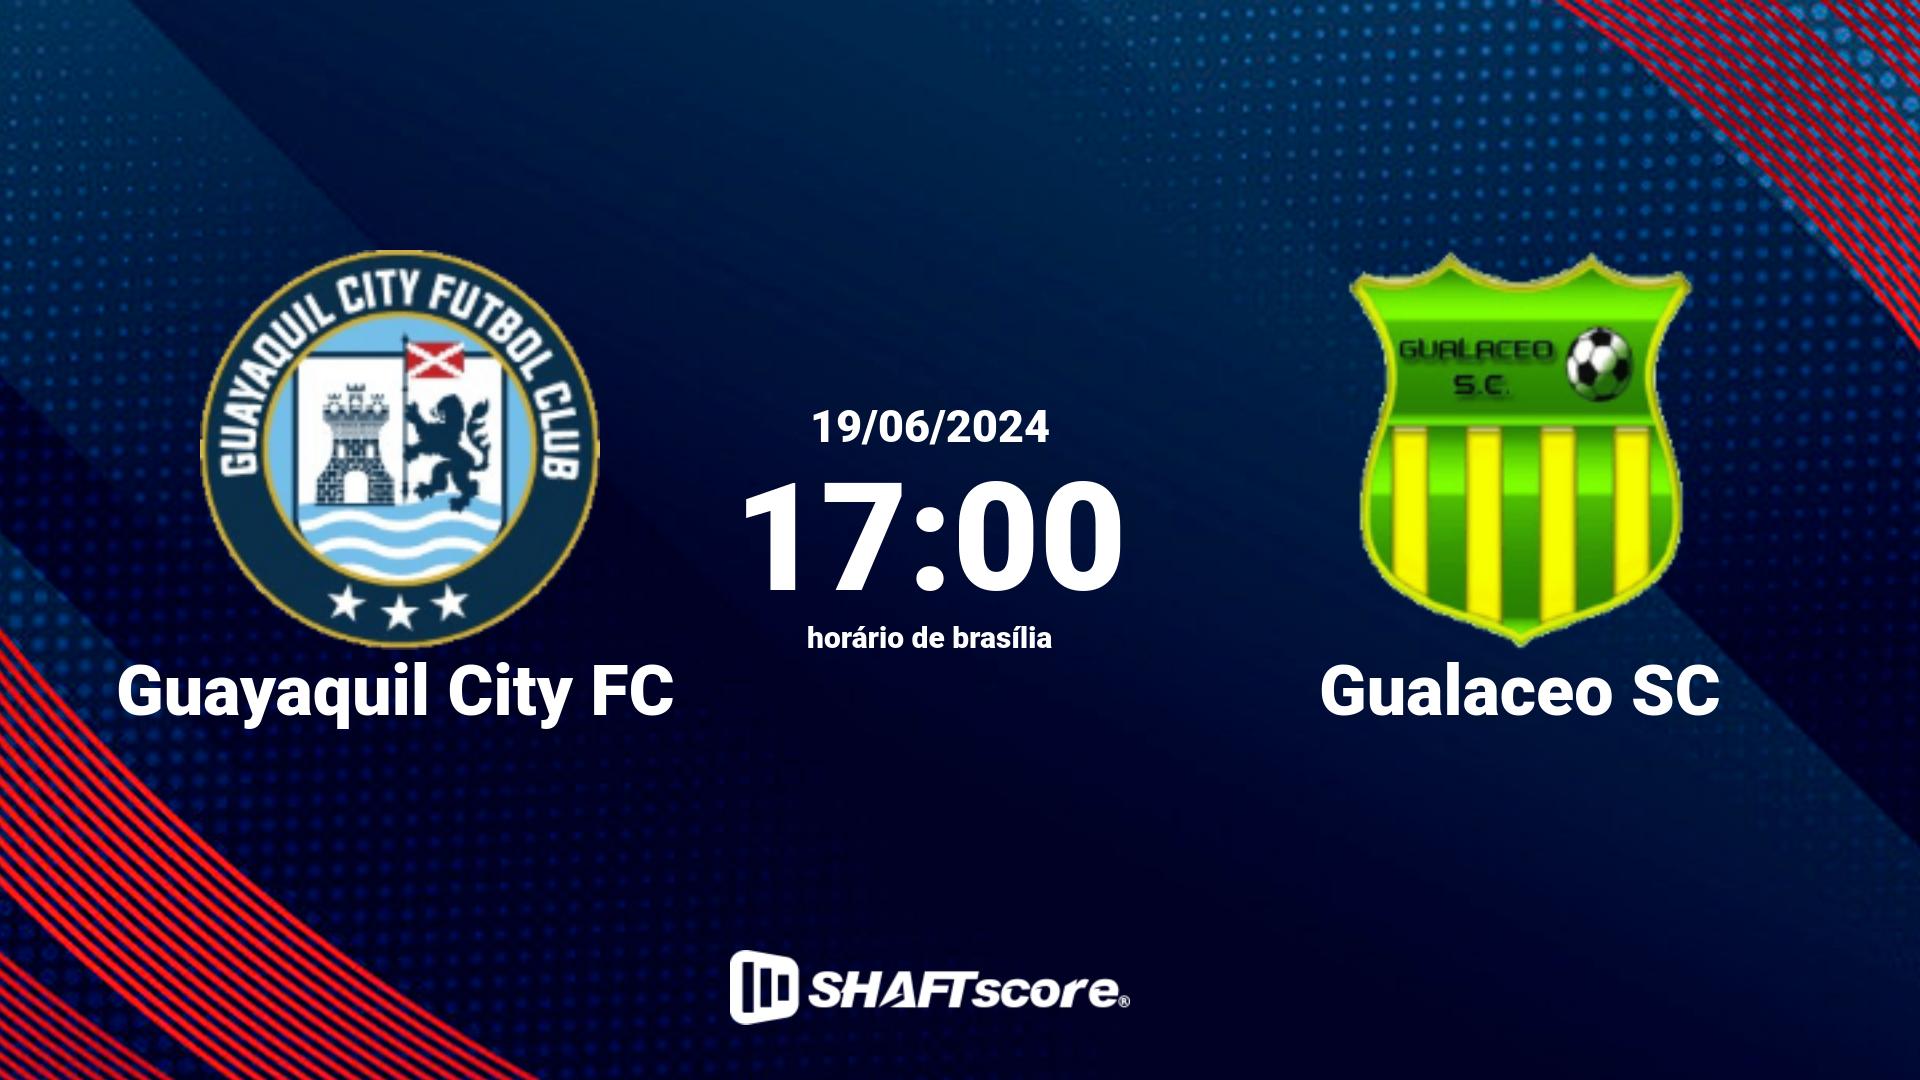 Estatísticas do jogo Guayaquil City FC vs Gualaceo SC 19.06 17:00